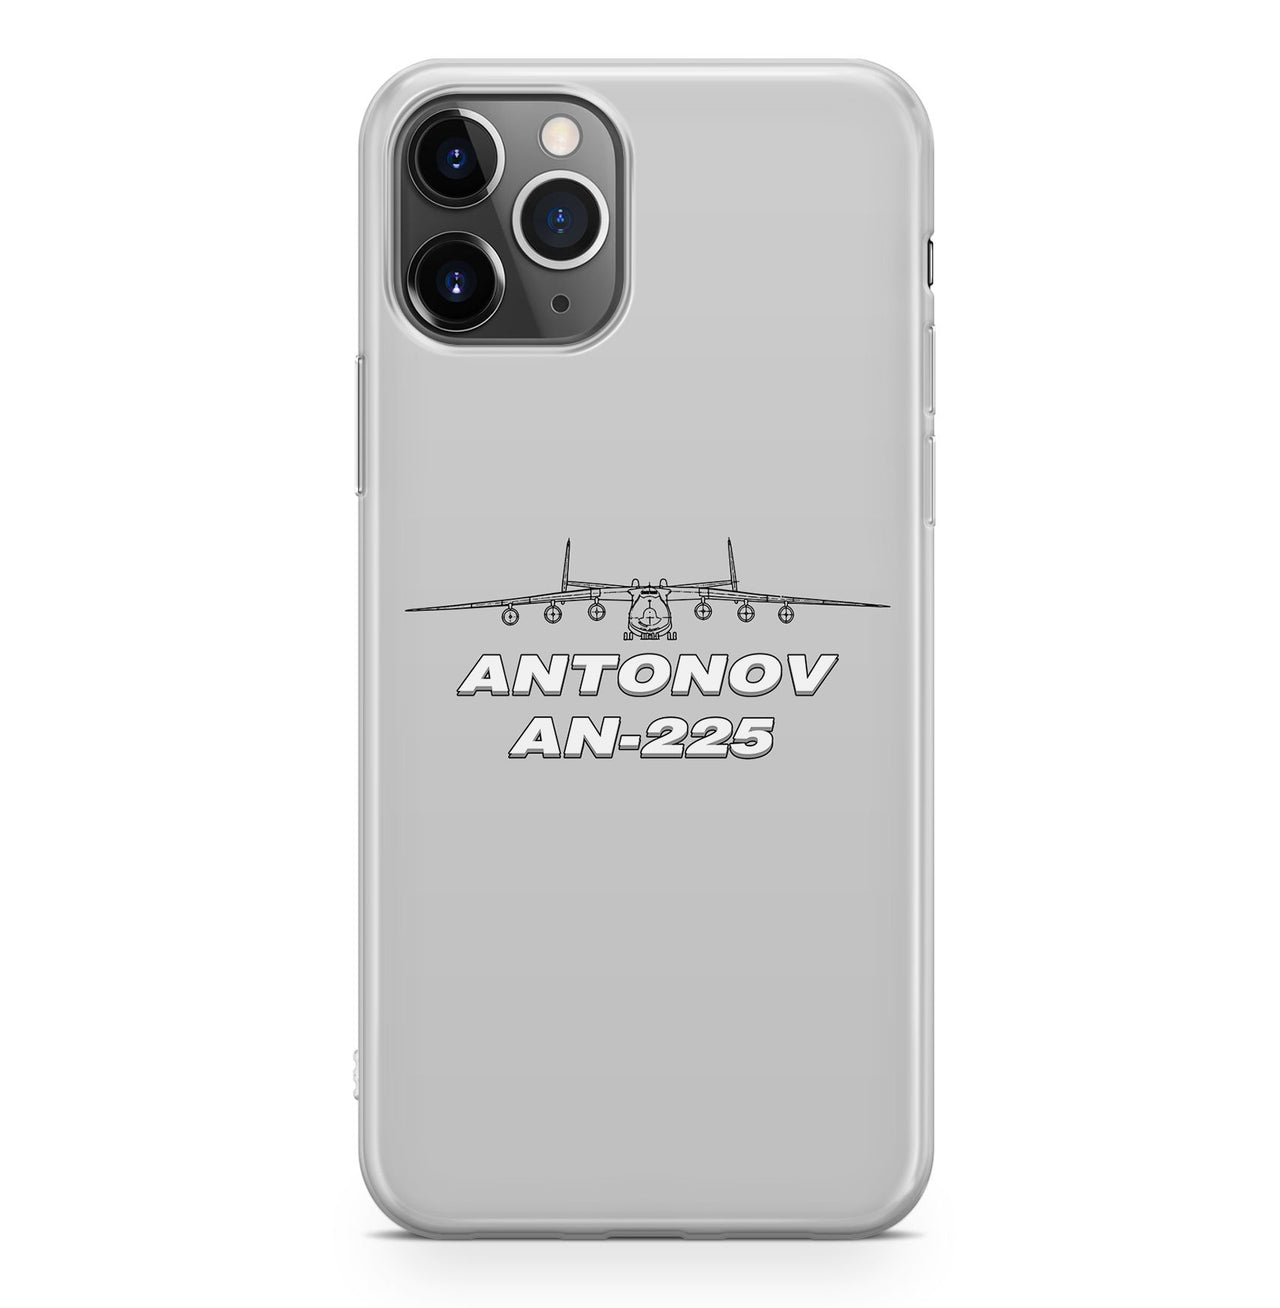 Antonov AN-225 (26) Designed iPhone Cases